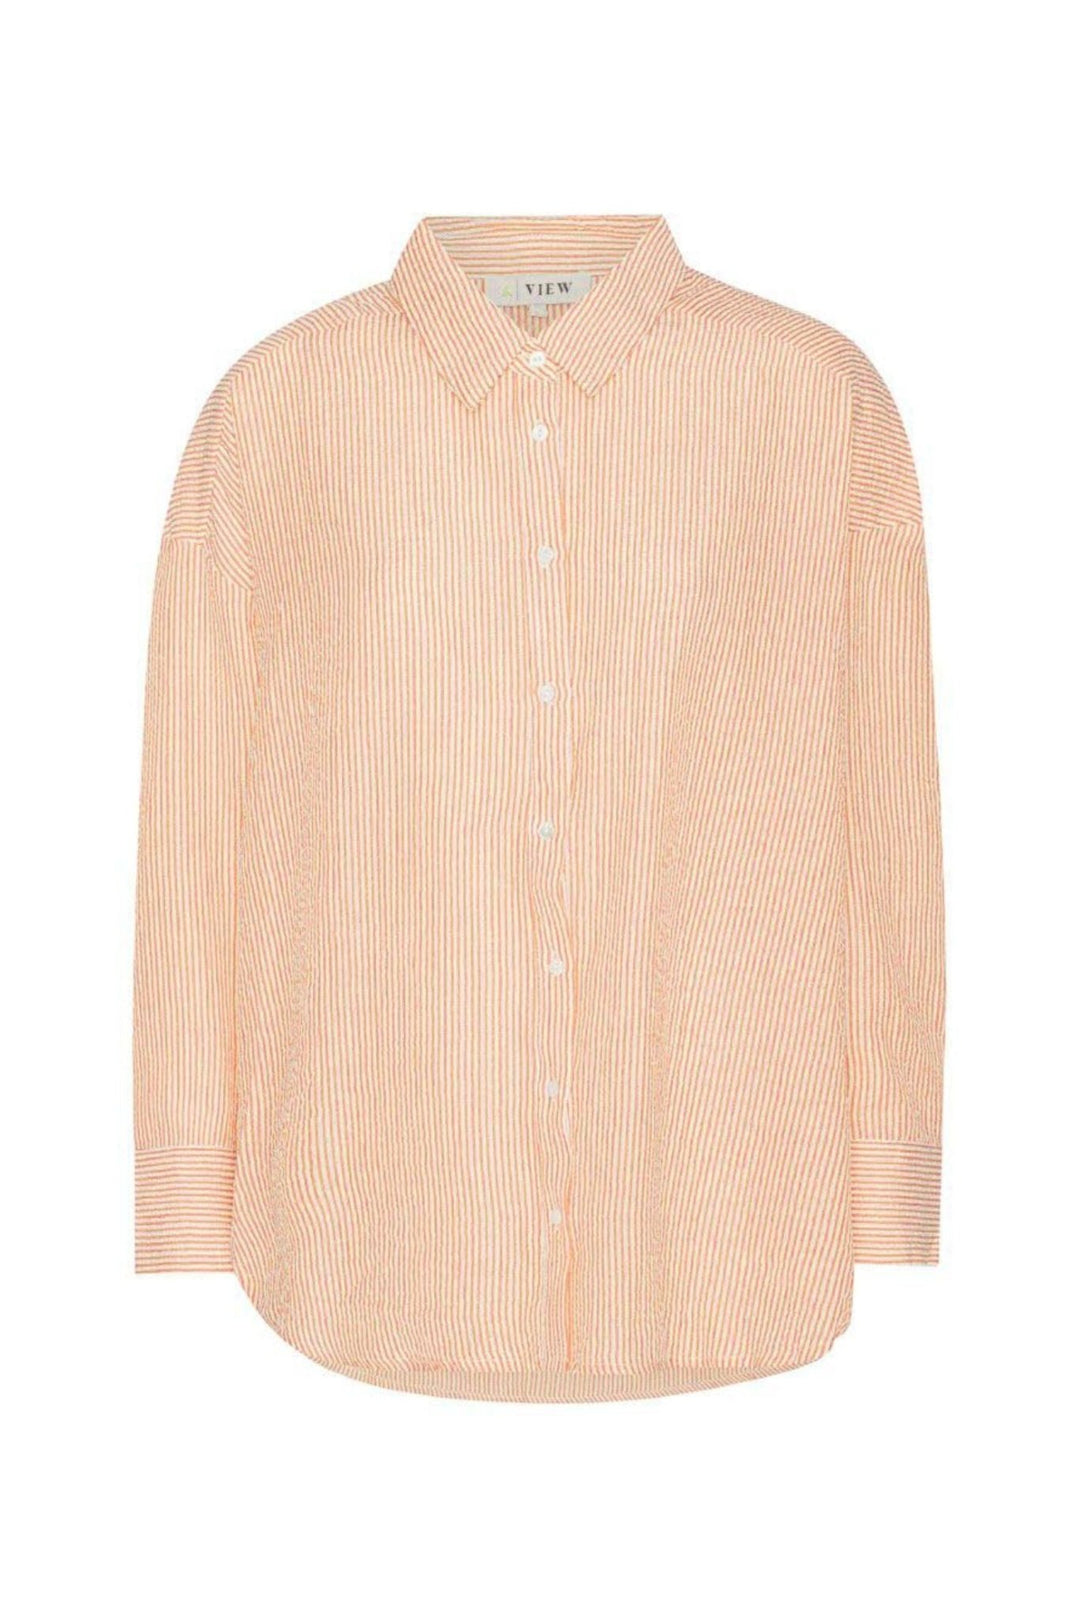 Sonja Shirt Orange/White | Skjorter og bluser | Smuk - Dameklær på nett